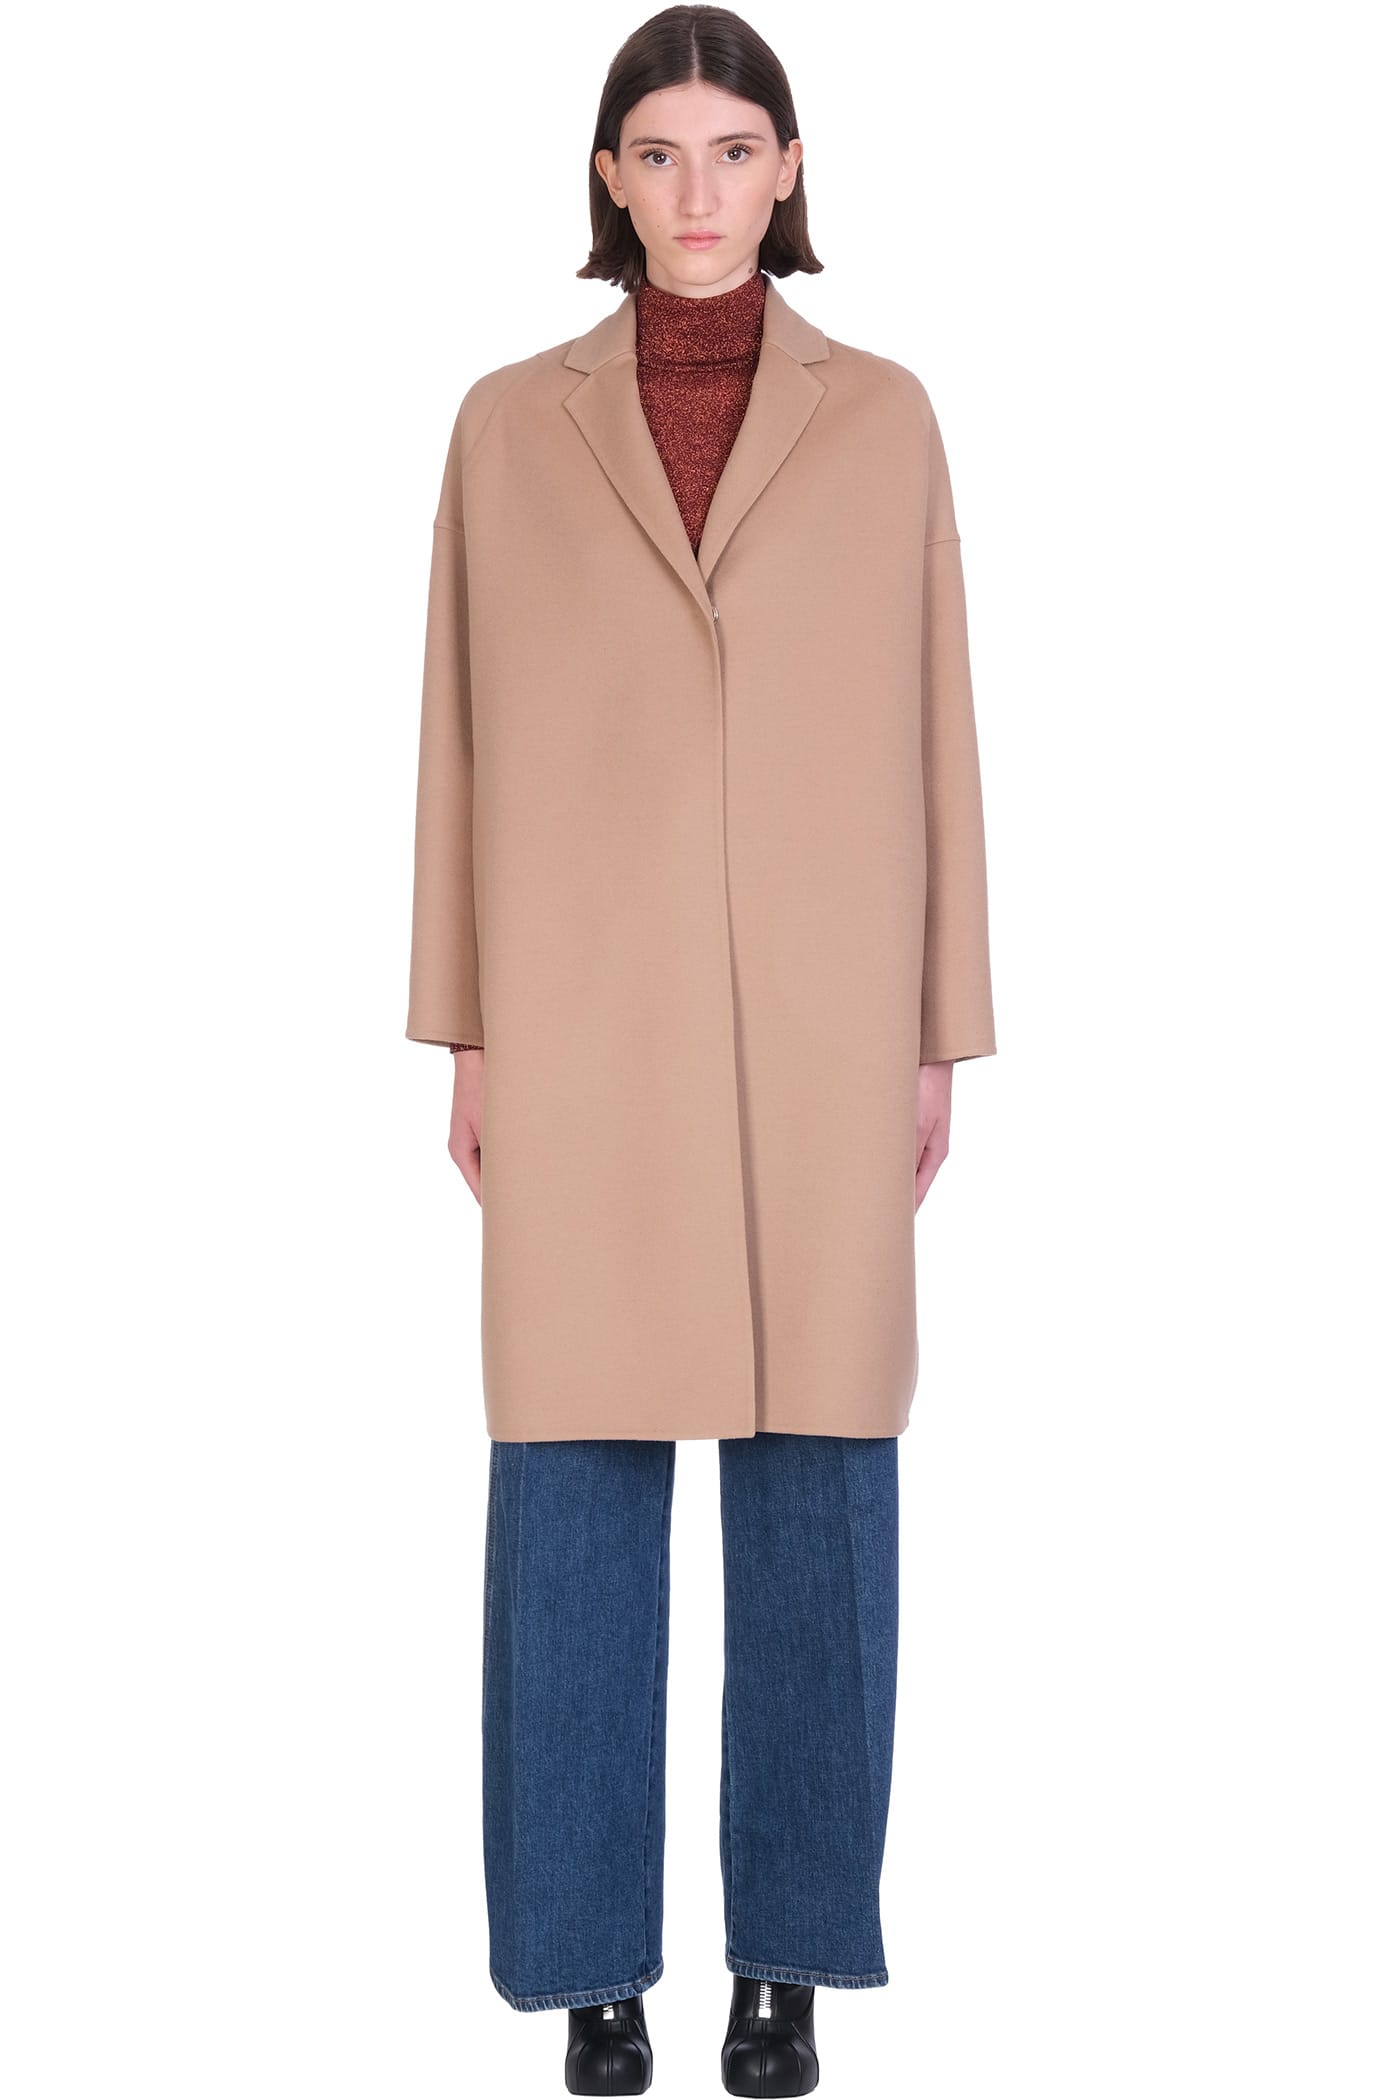 Photo of  Stella McCartney Biplin Coat In Camel Wool- shop Stella McCartney jackets online sales